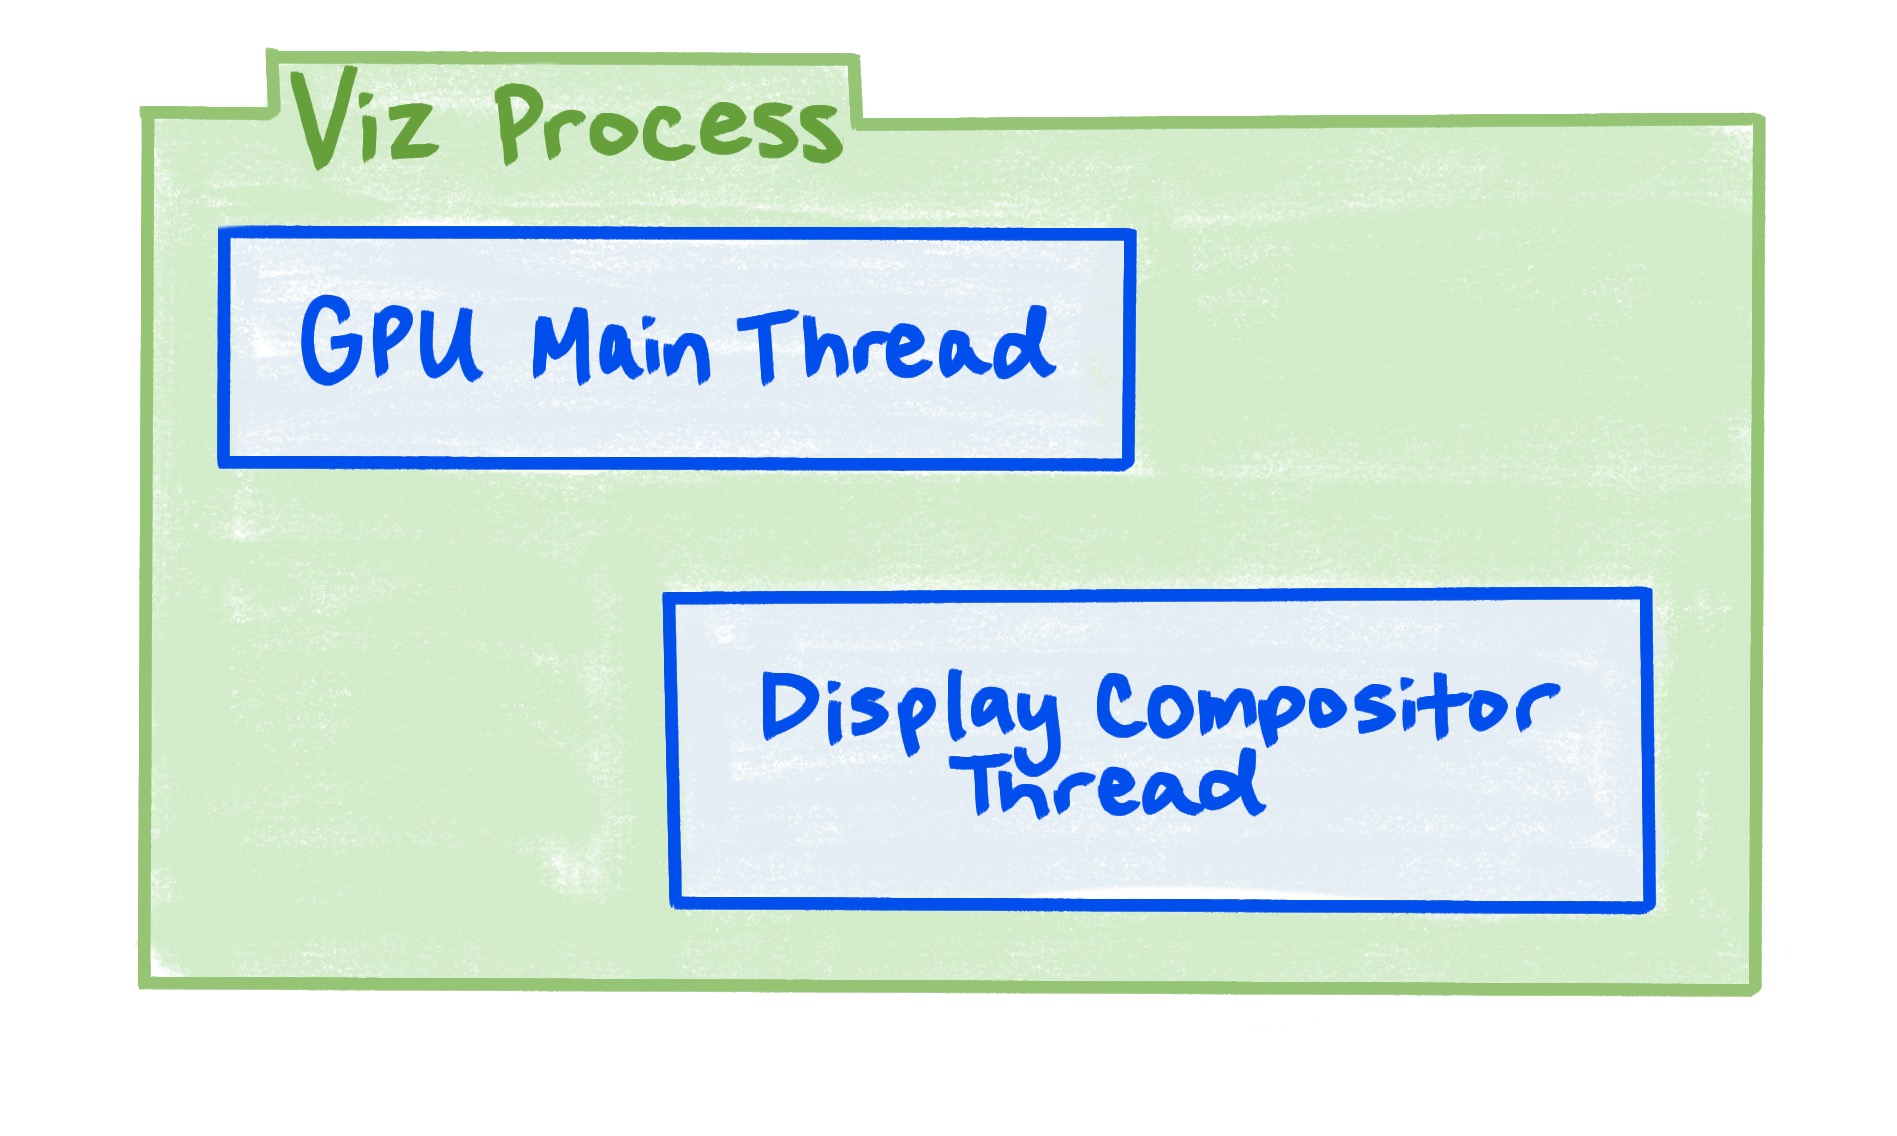 Ein Diagramm, das zeigt, dass der Viz-Prozess den GPU-Hauptthread und den Display-Compositor-Thread enthält.